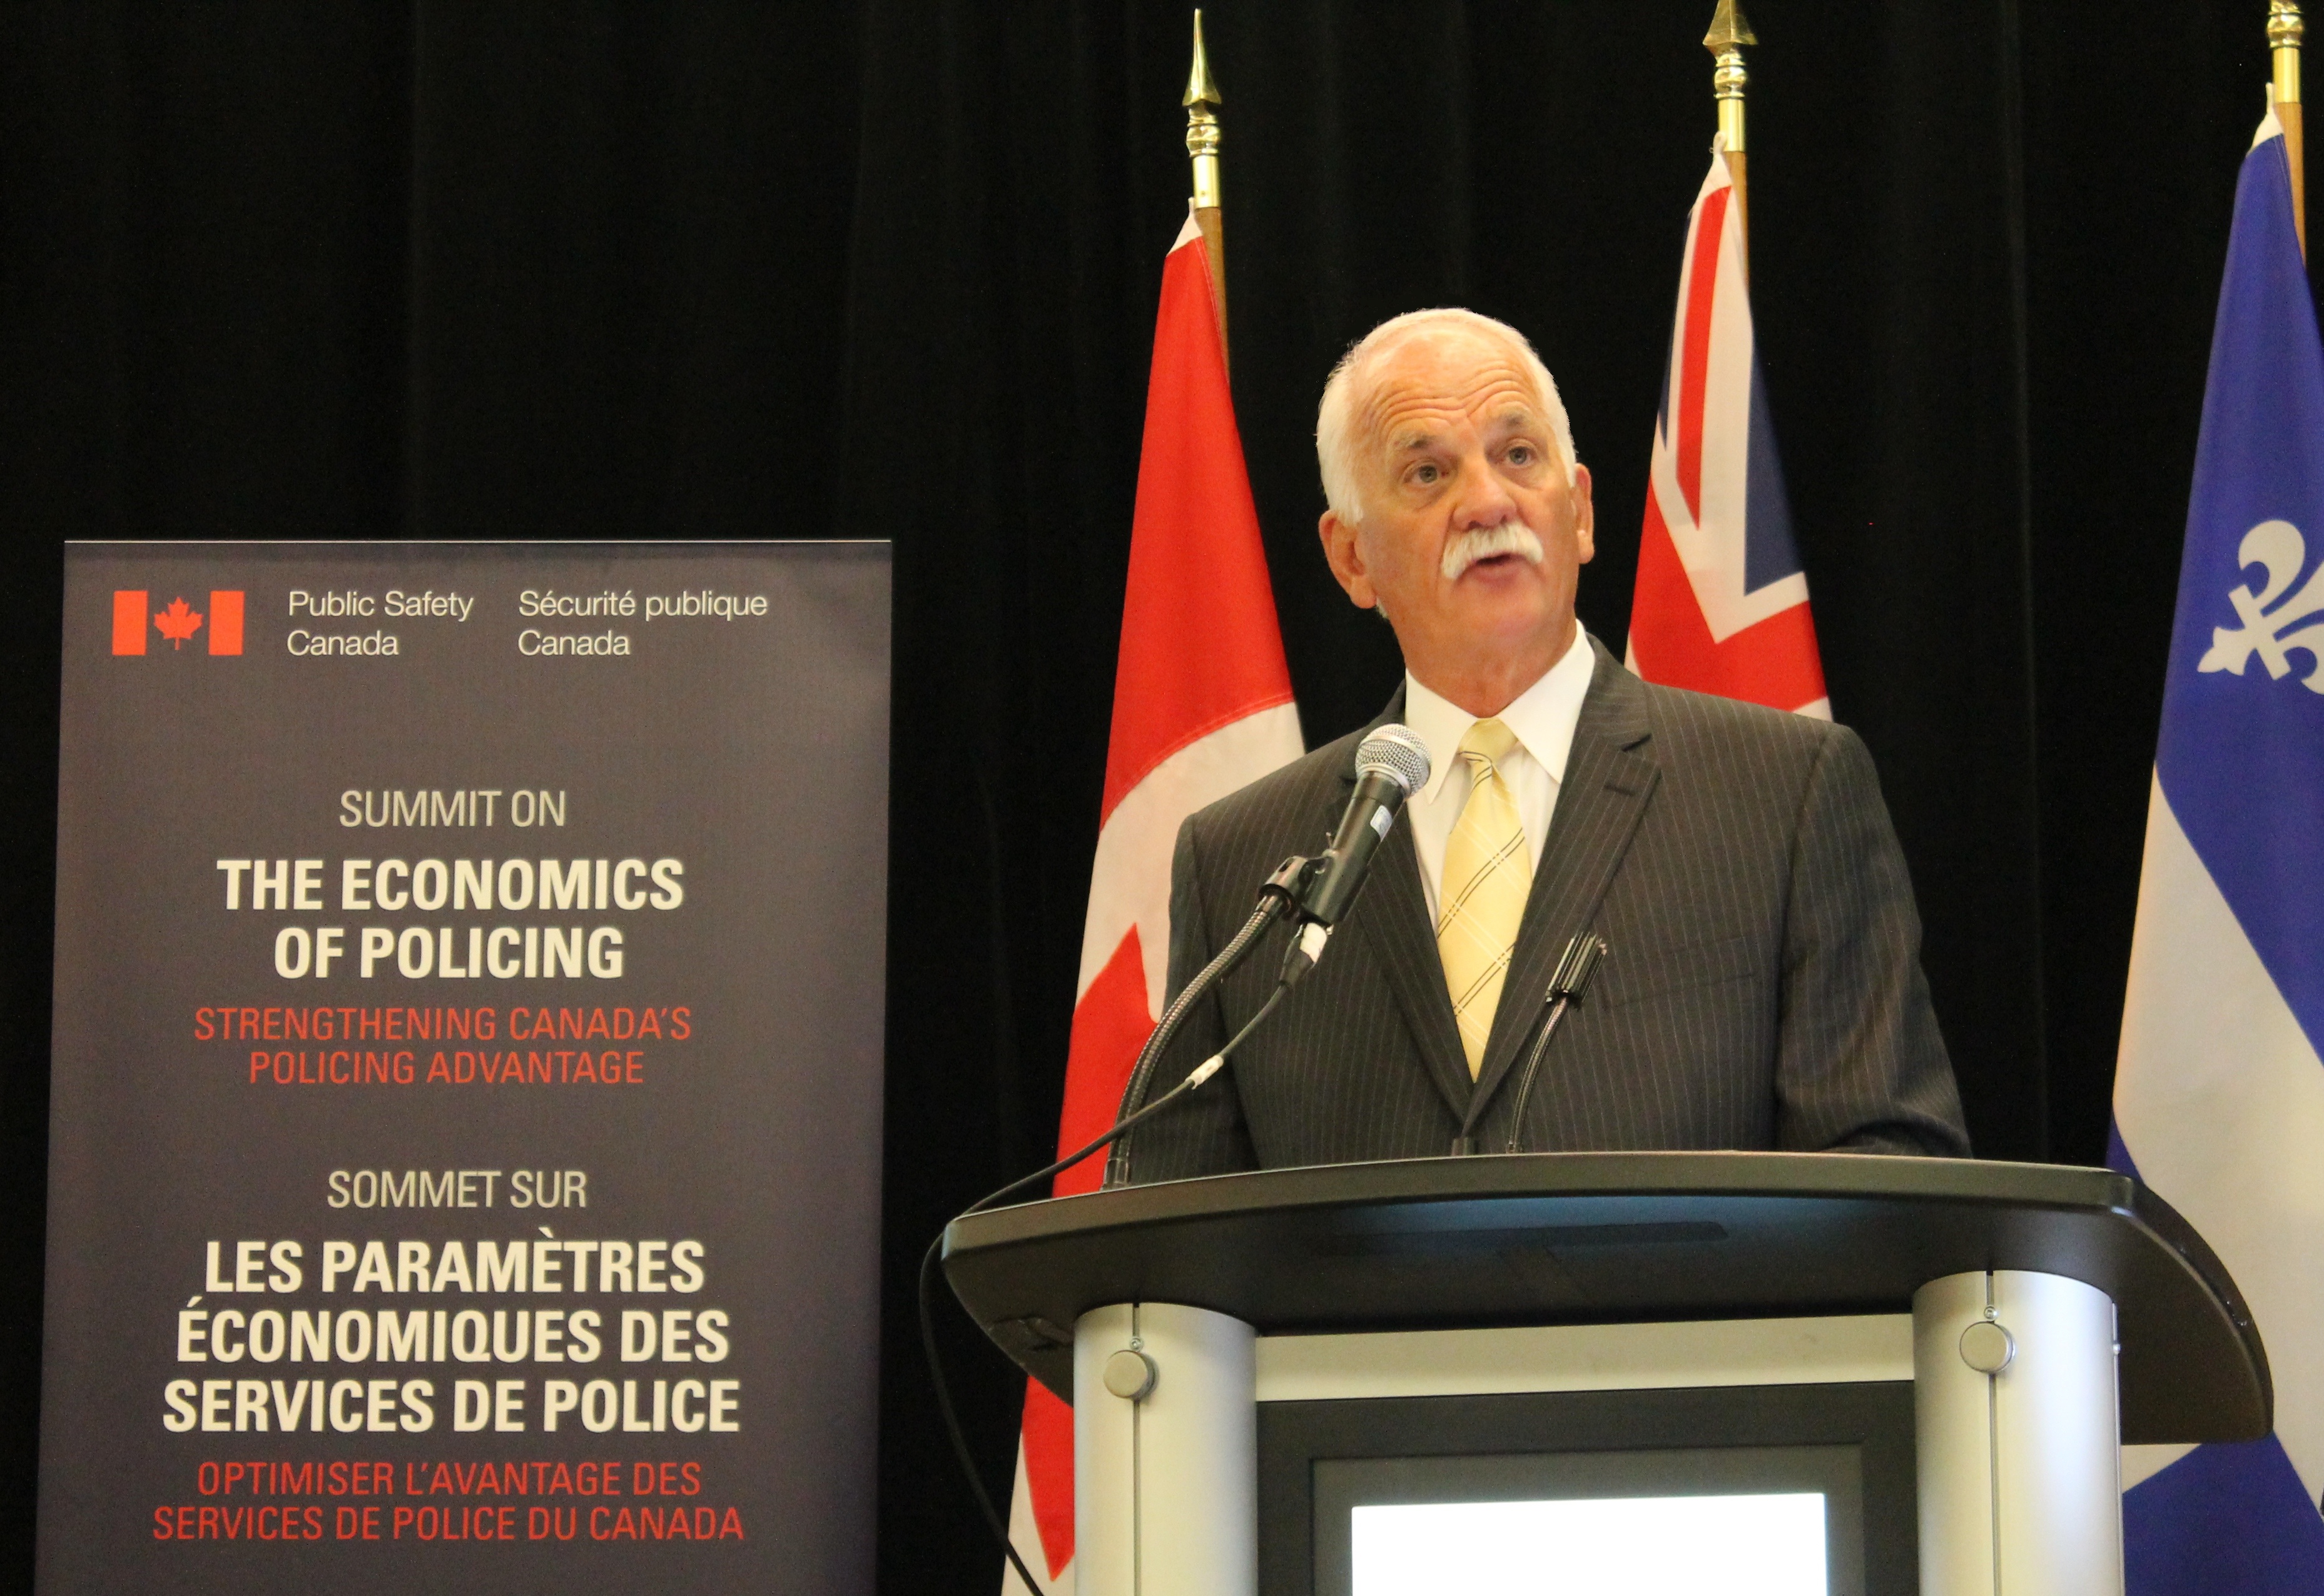 Les responsables des services de police discutent de l'avenir des services de police au Canada